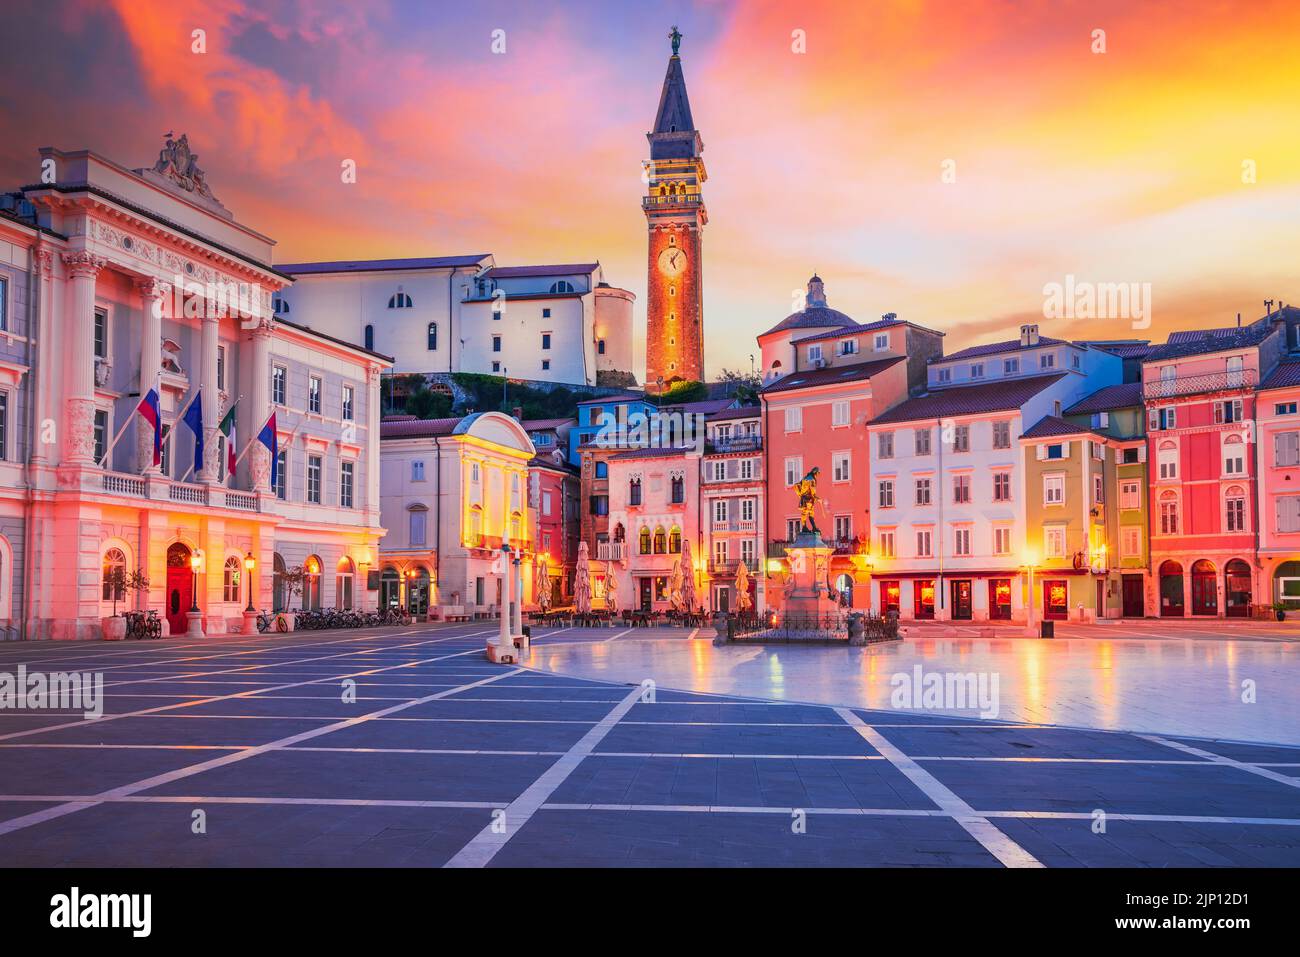 Piran, Slowenien. Schöne Dämmerung Blick auf die Altstadt Tartini Platz, Reise slowenischen Hintergrund. Stockfoto